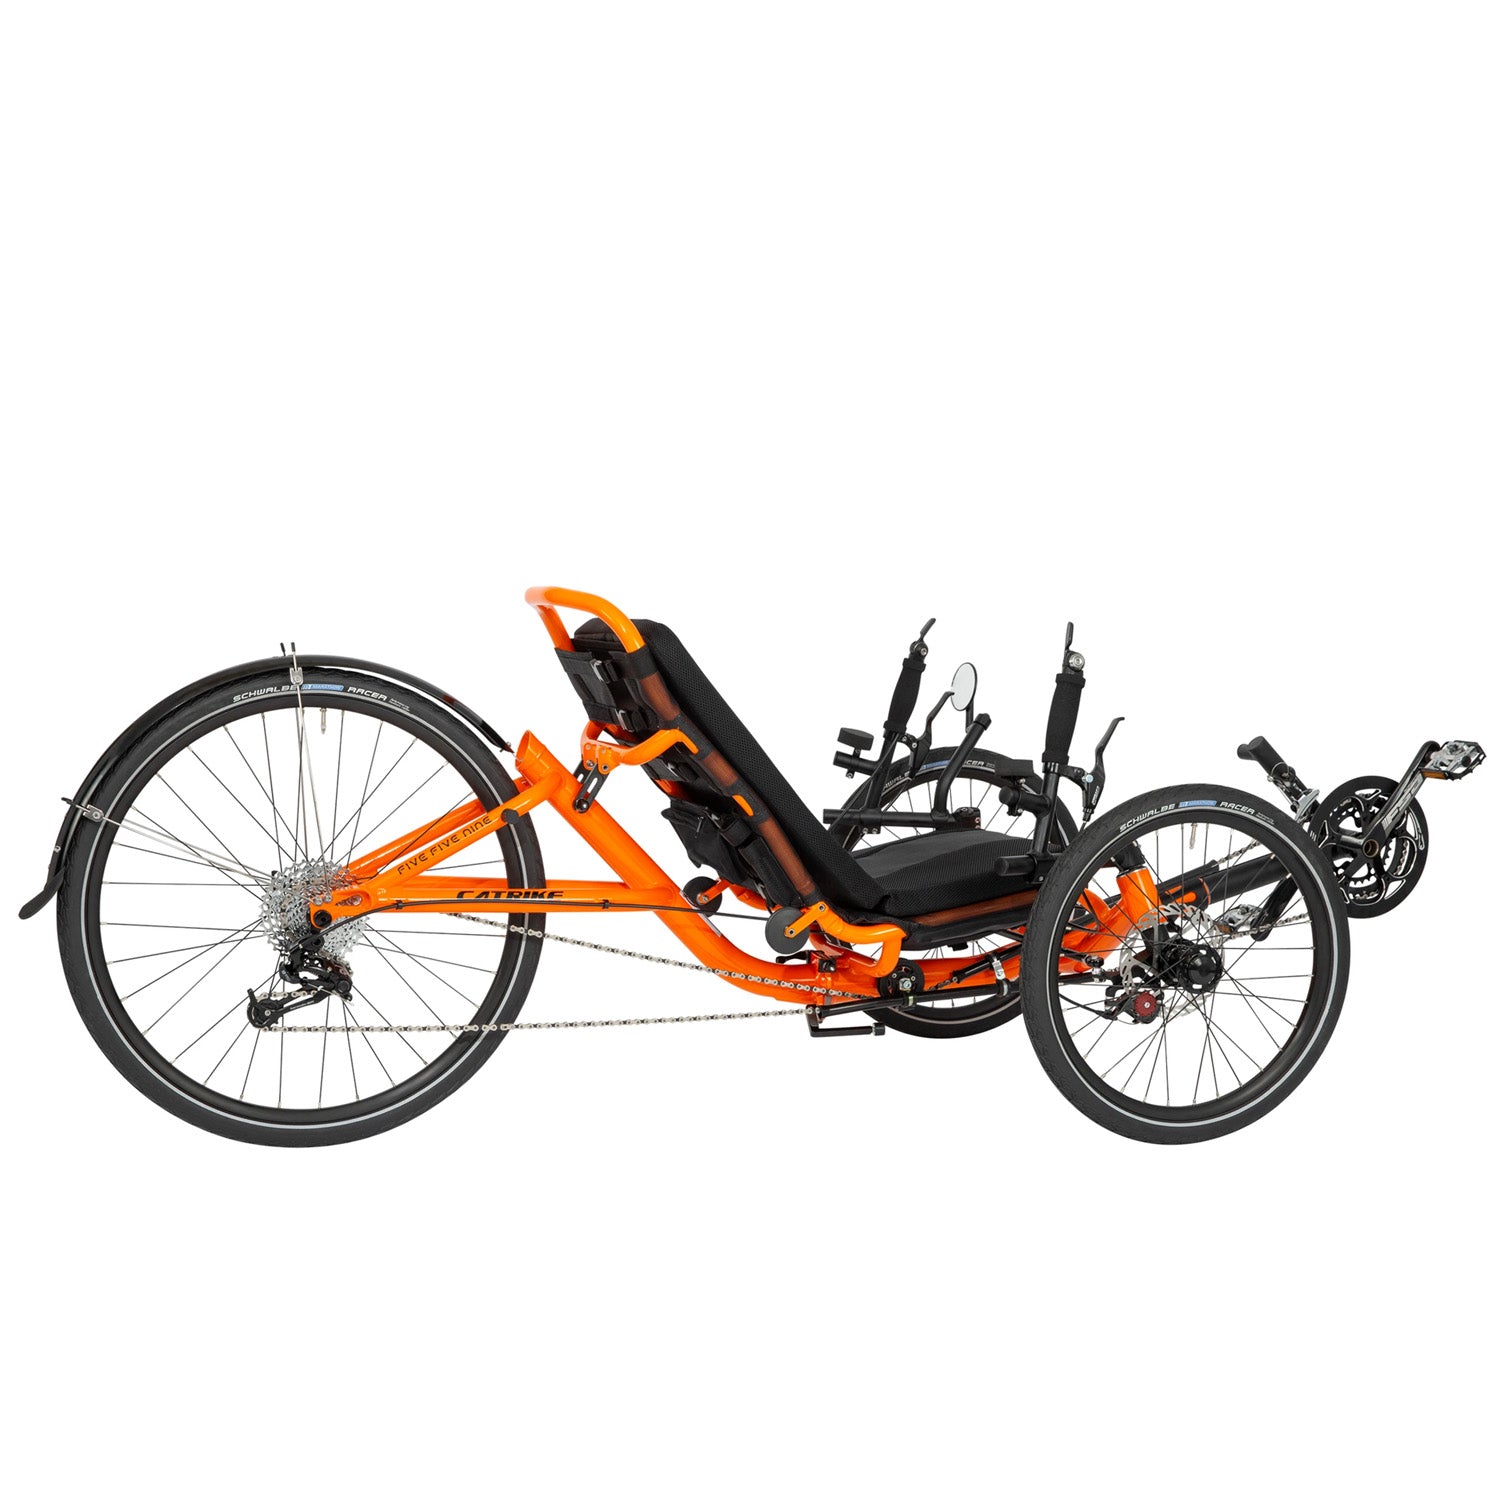 Catrike 5.5.9 Trike right side, Atomic Orange, Bixby Bicycle